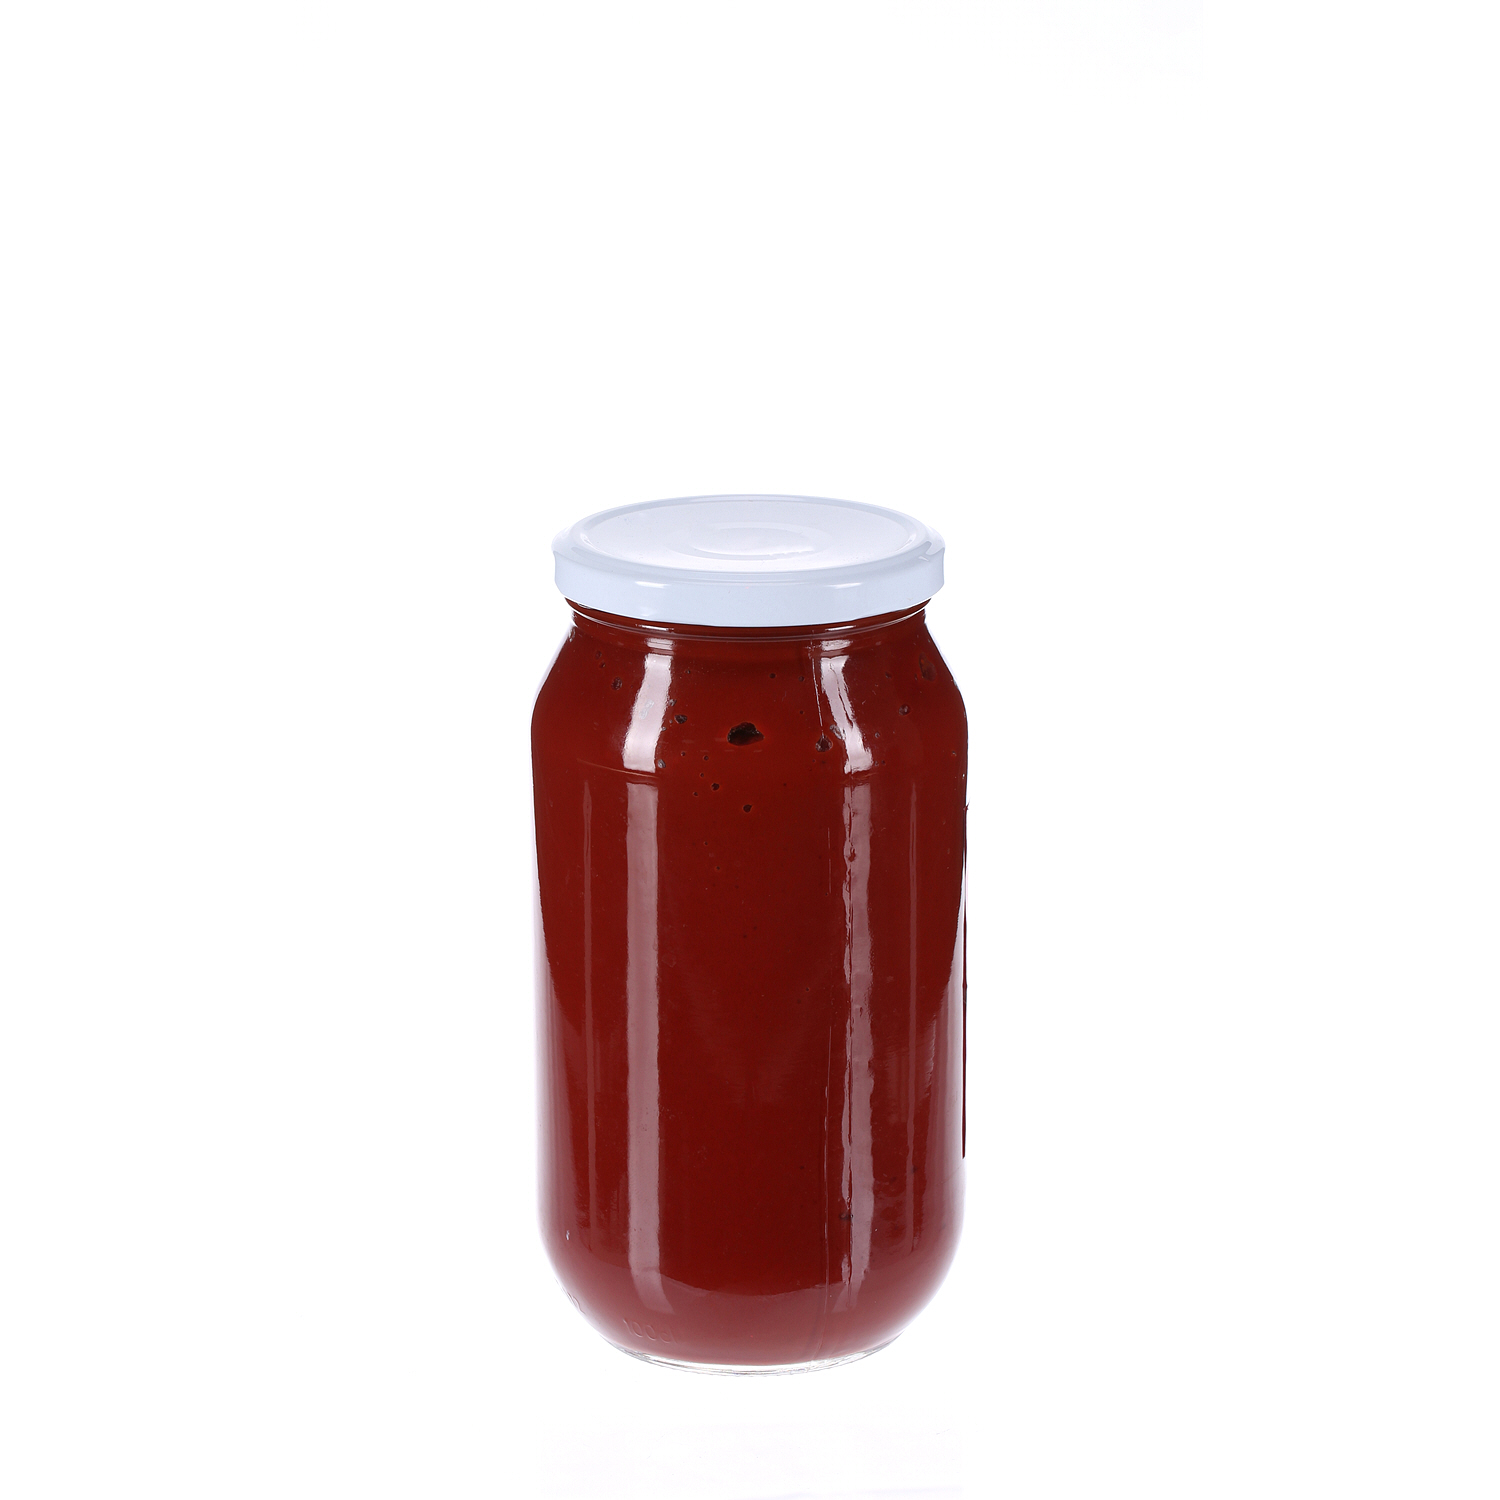 يمامة معجون الطماطم 1.1 كيلو